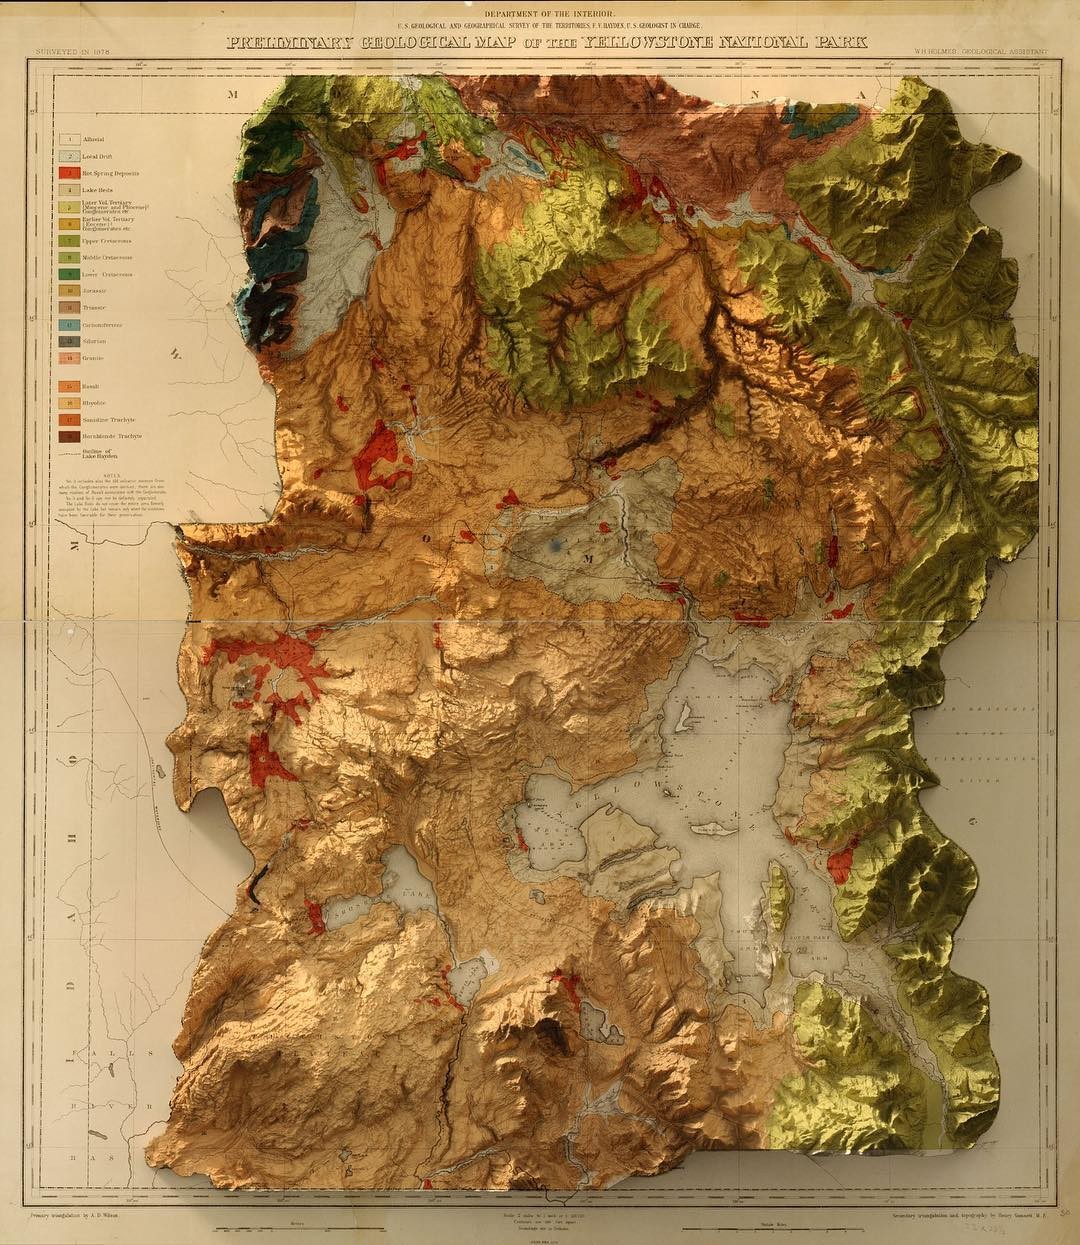 Quadro Mapa de Relevo de Portugal